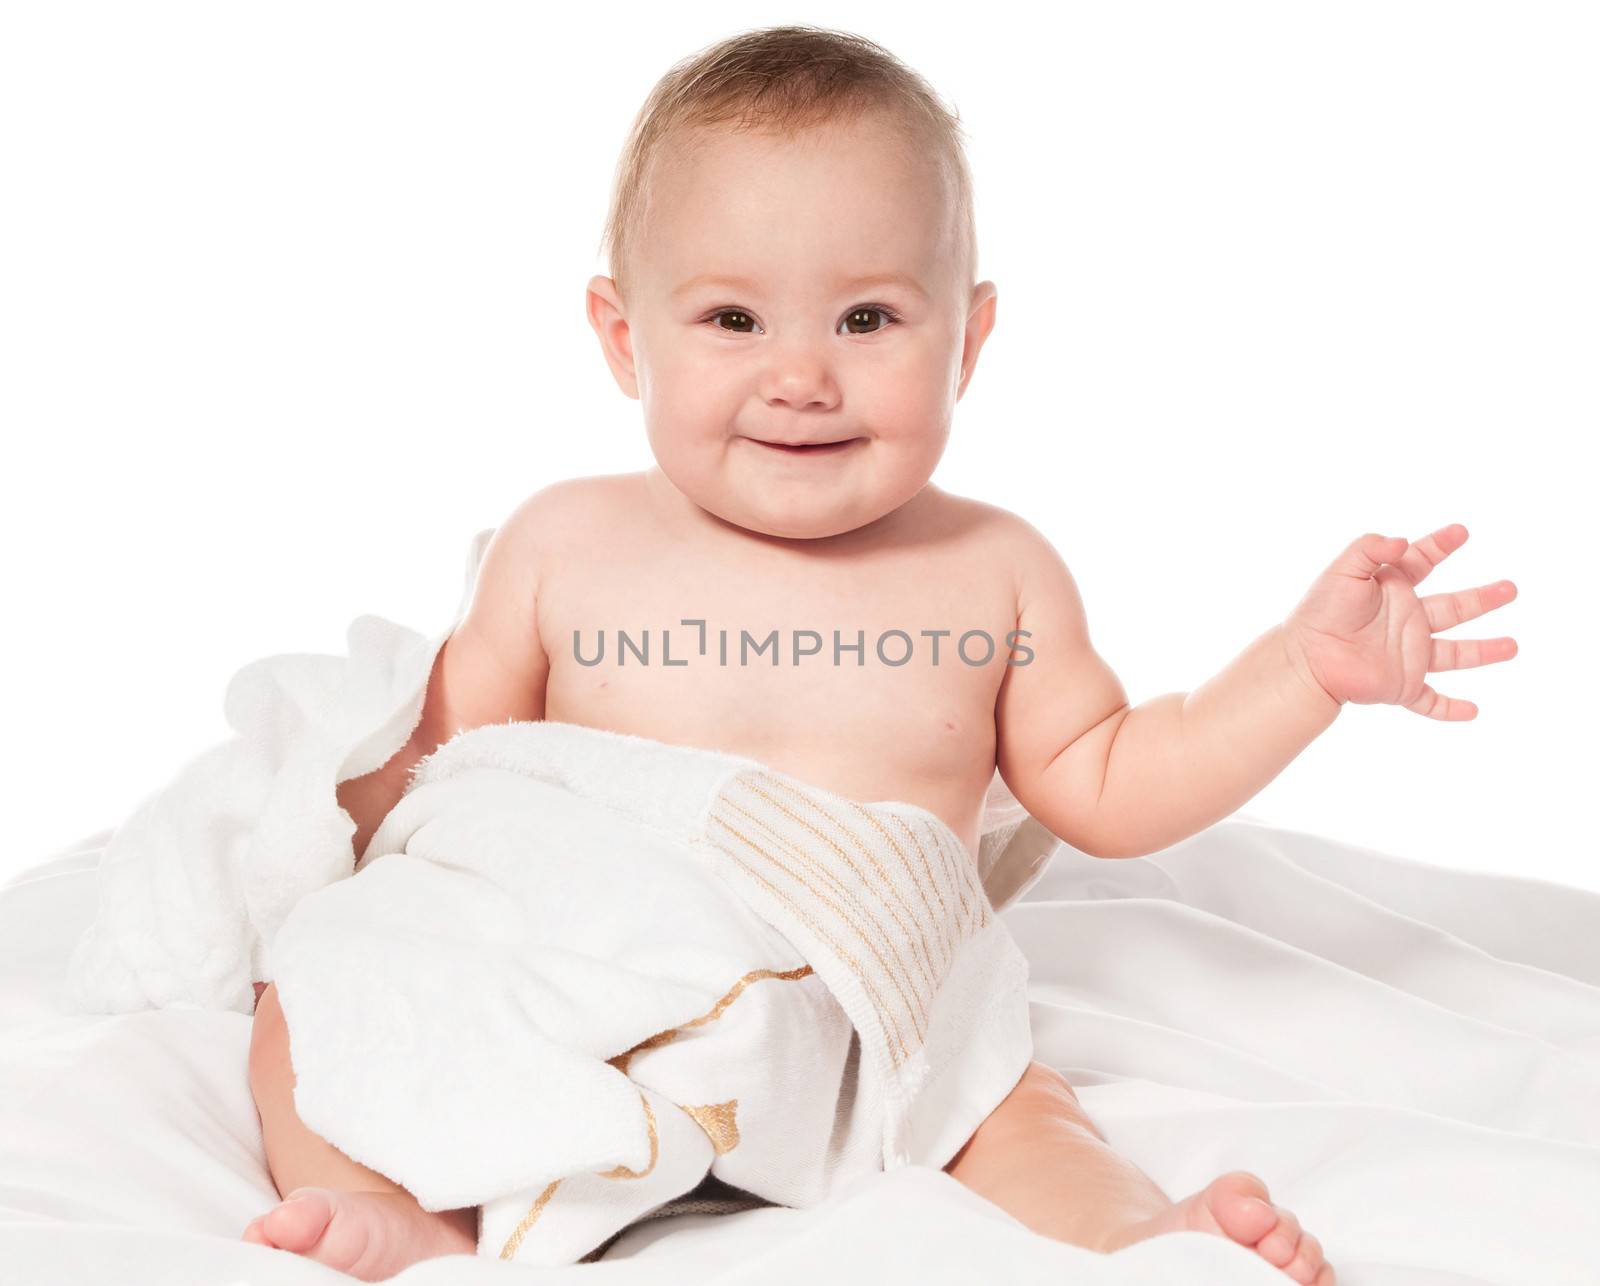 Little boy in bath towel by GekaSkr